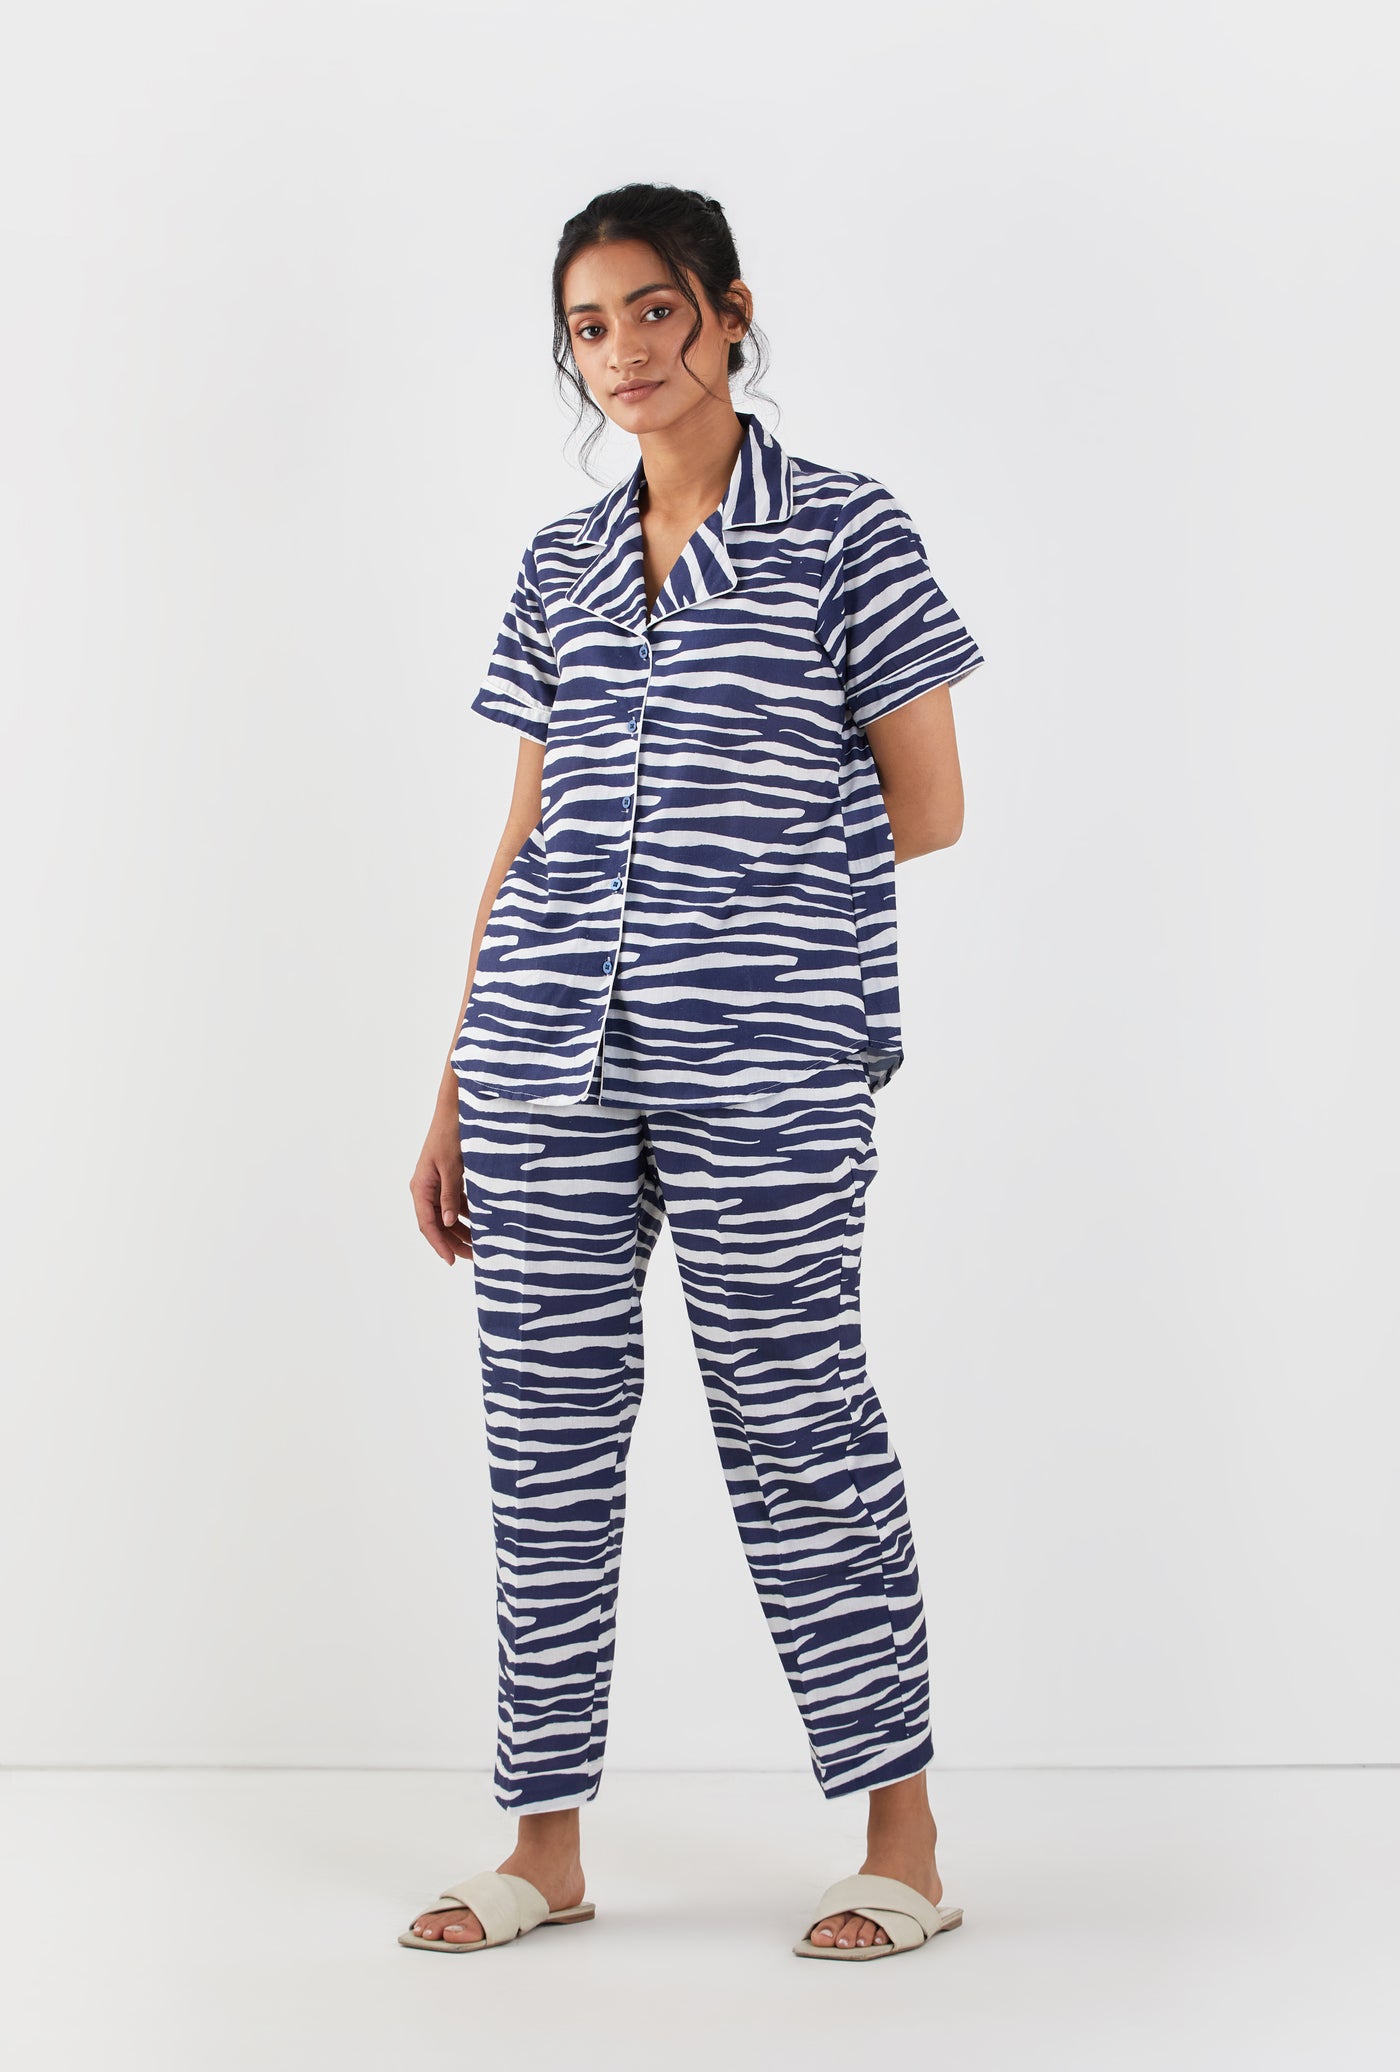 Cora Pyjama Set (6870717202492)